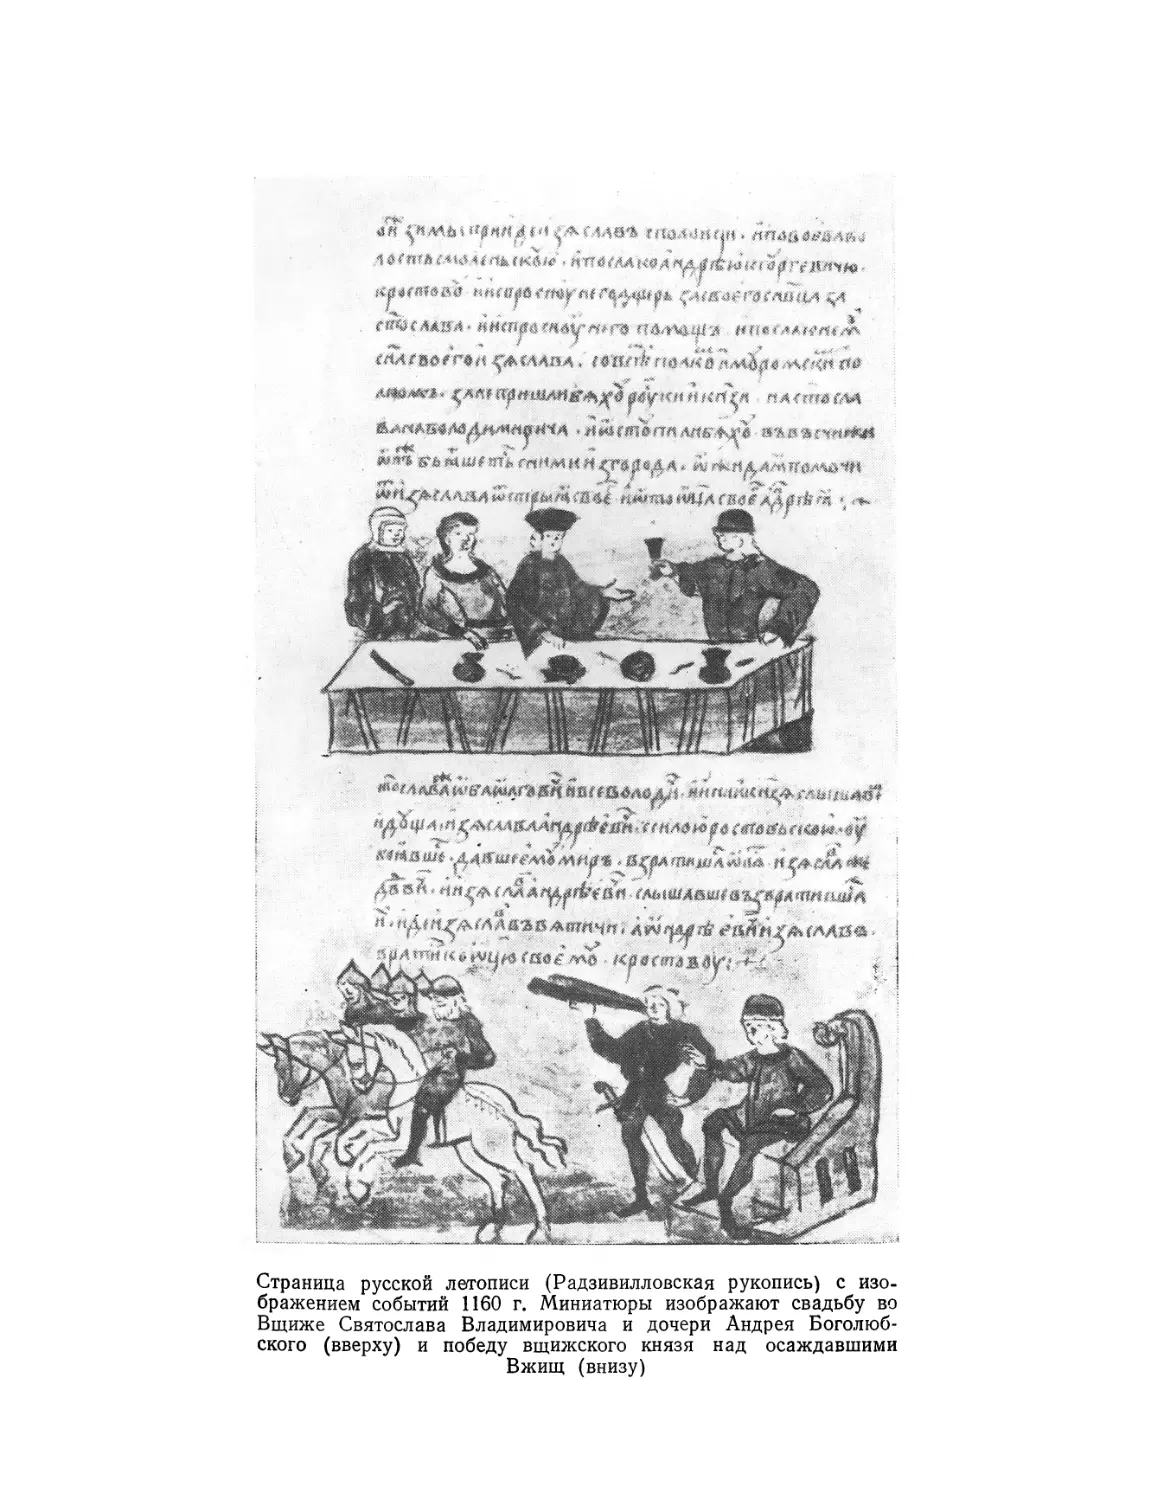 Вклейка. Страница русской летописи с изображением событий 1160 г.